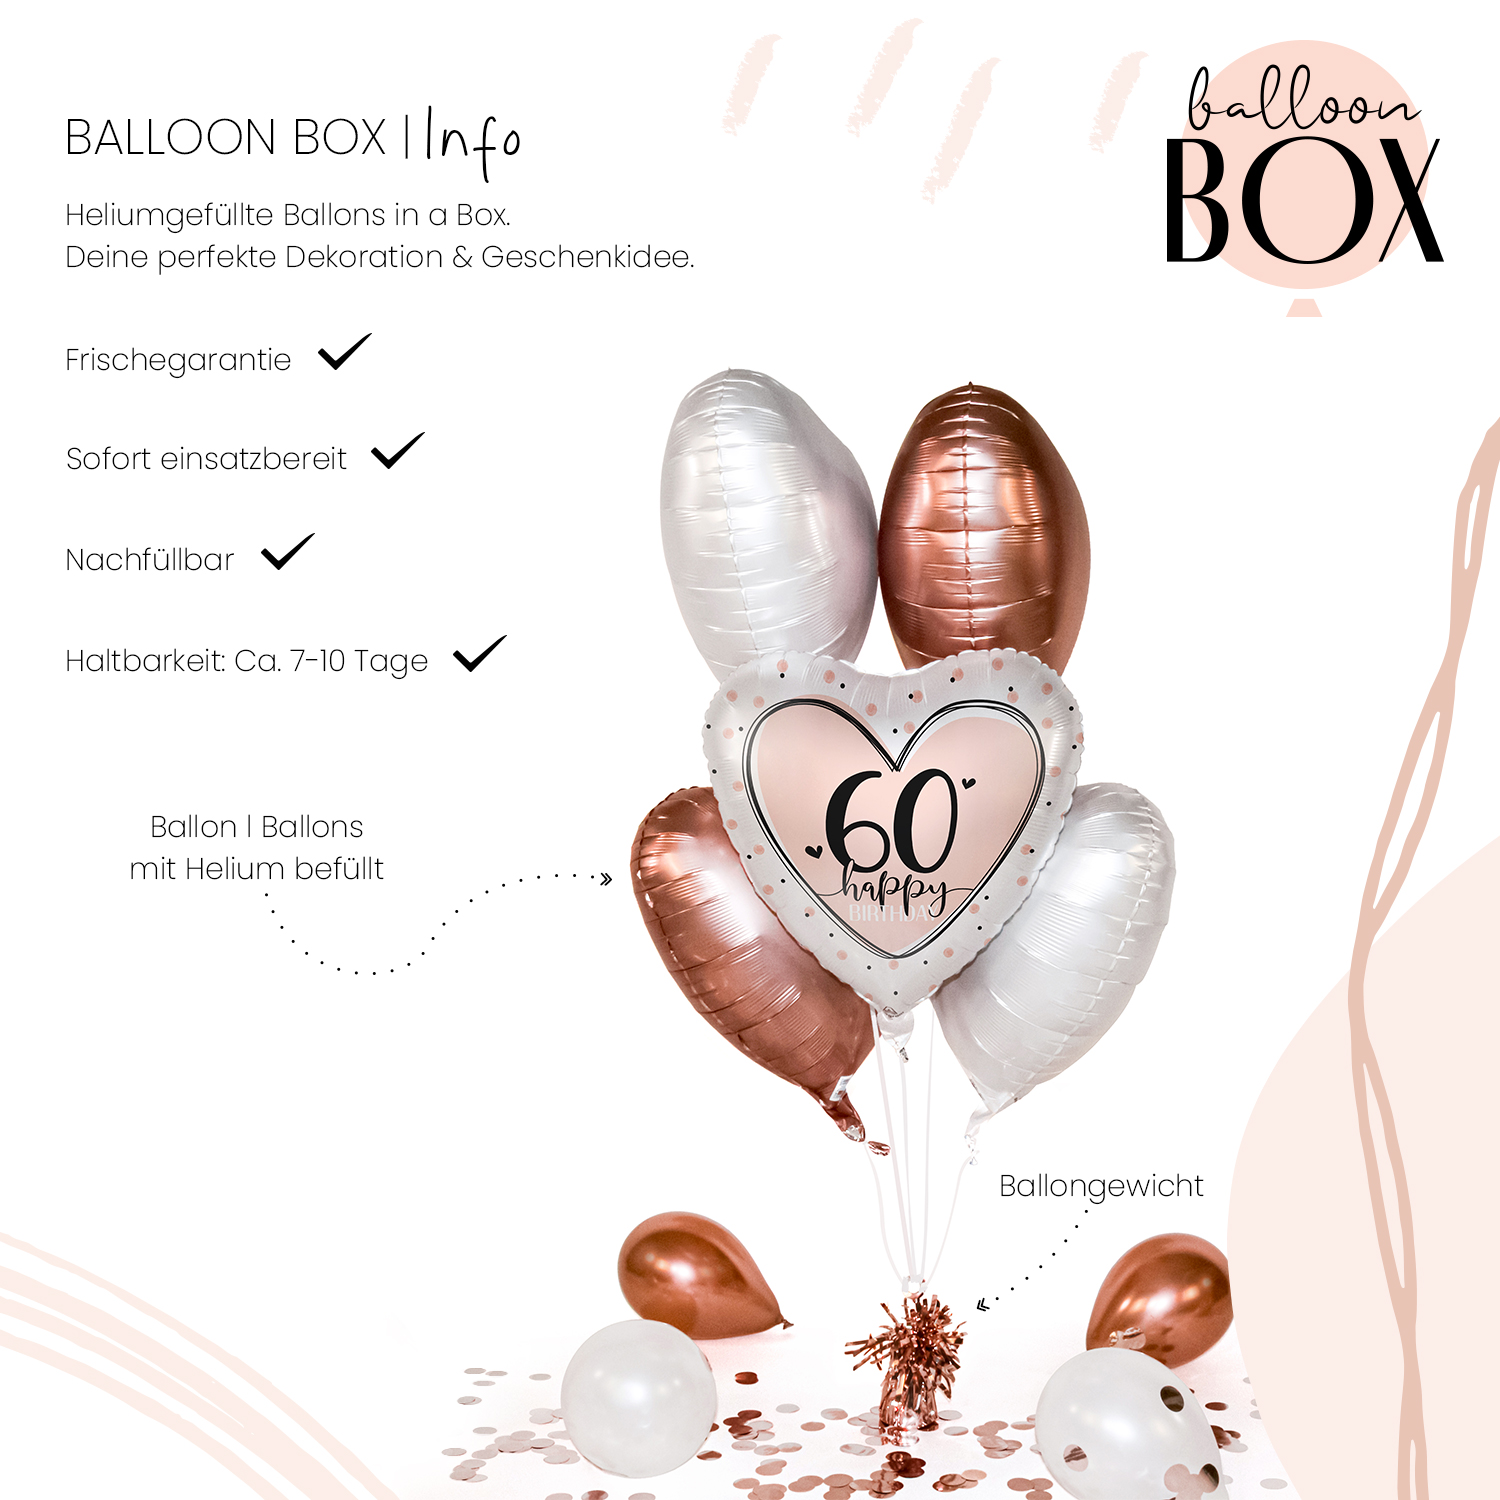 Heliumballon in a Box - Glossy Birthday 60